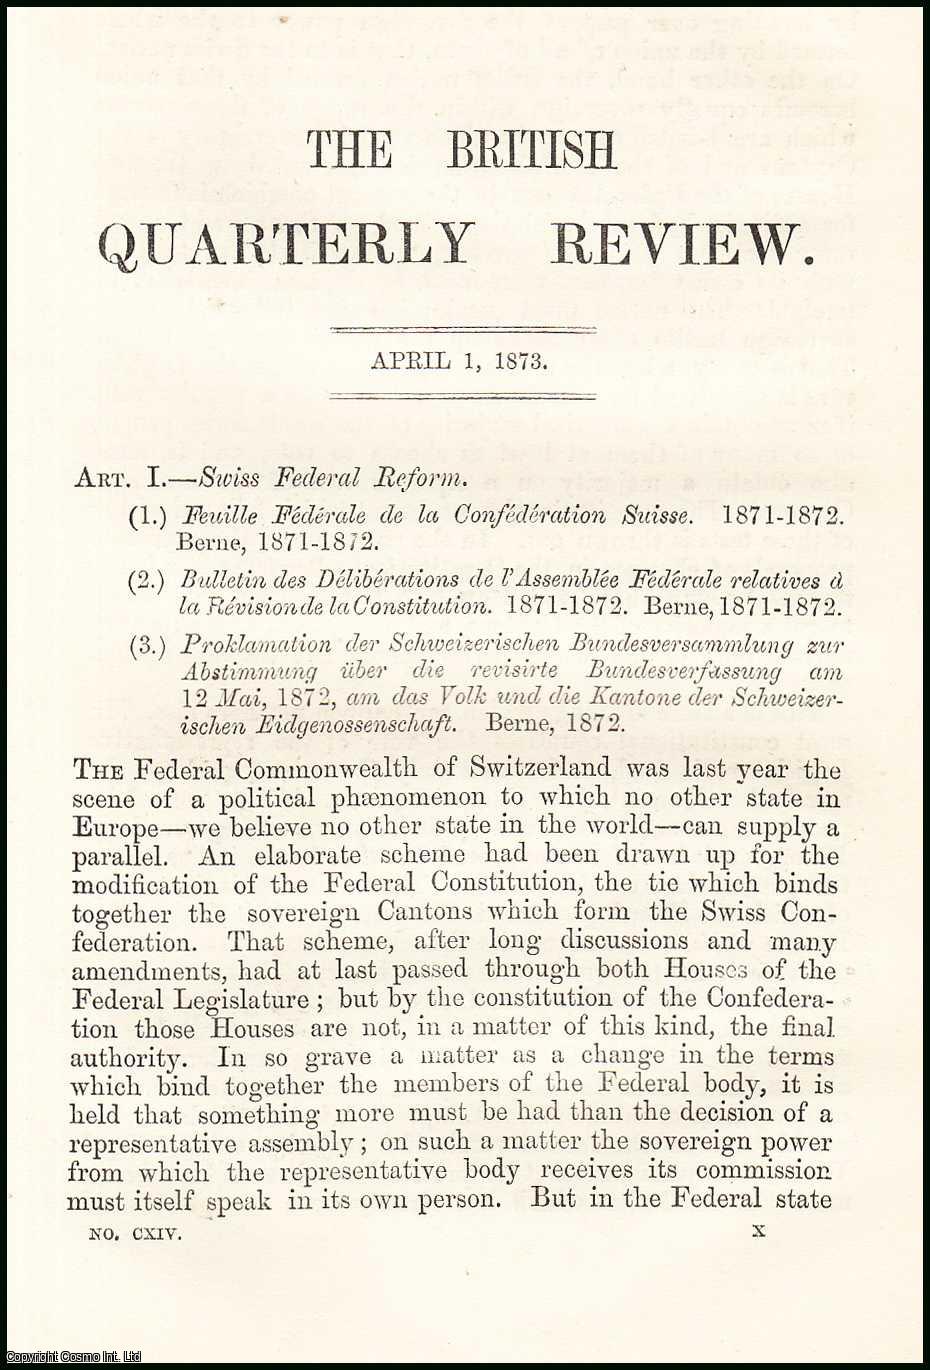 E. A. Freeman - Swiss Federal Reform. A rare original article from the British Quarterly Review, 1873.